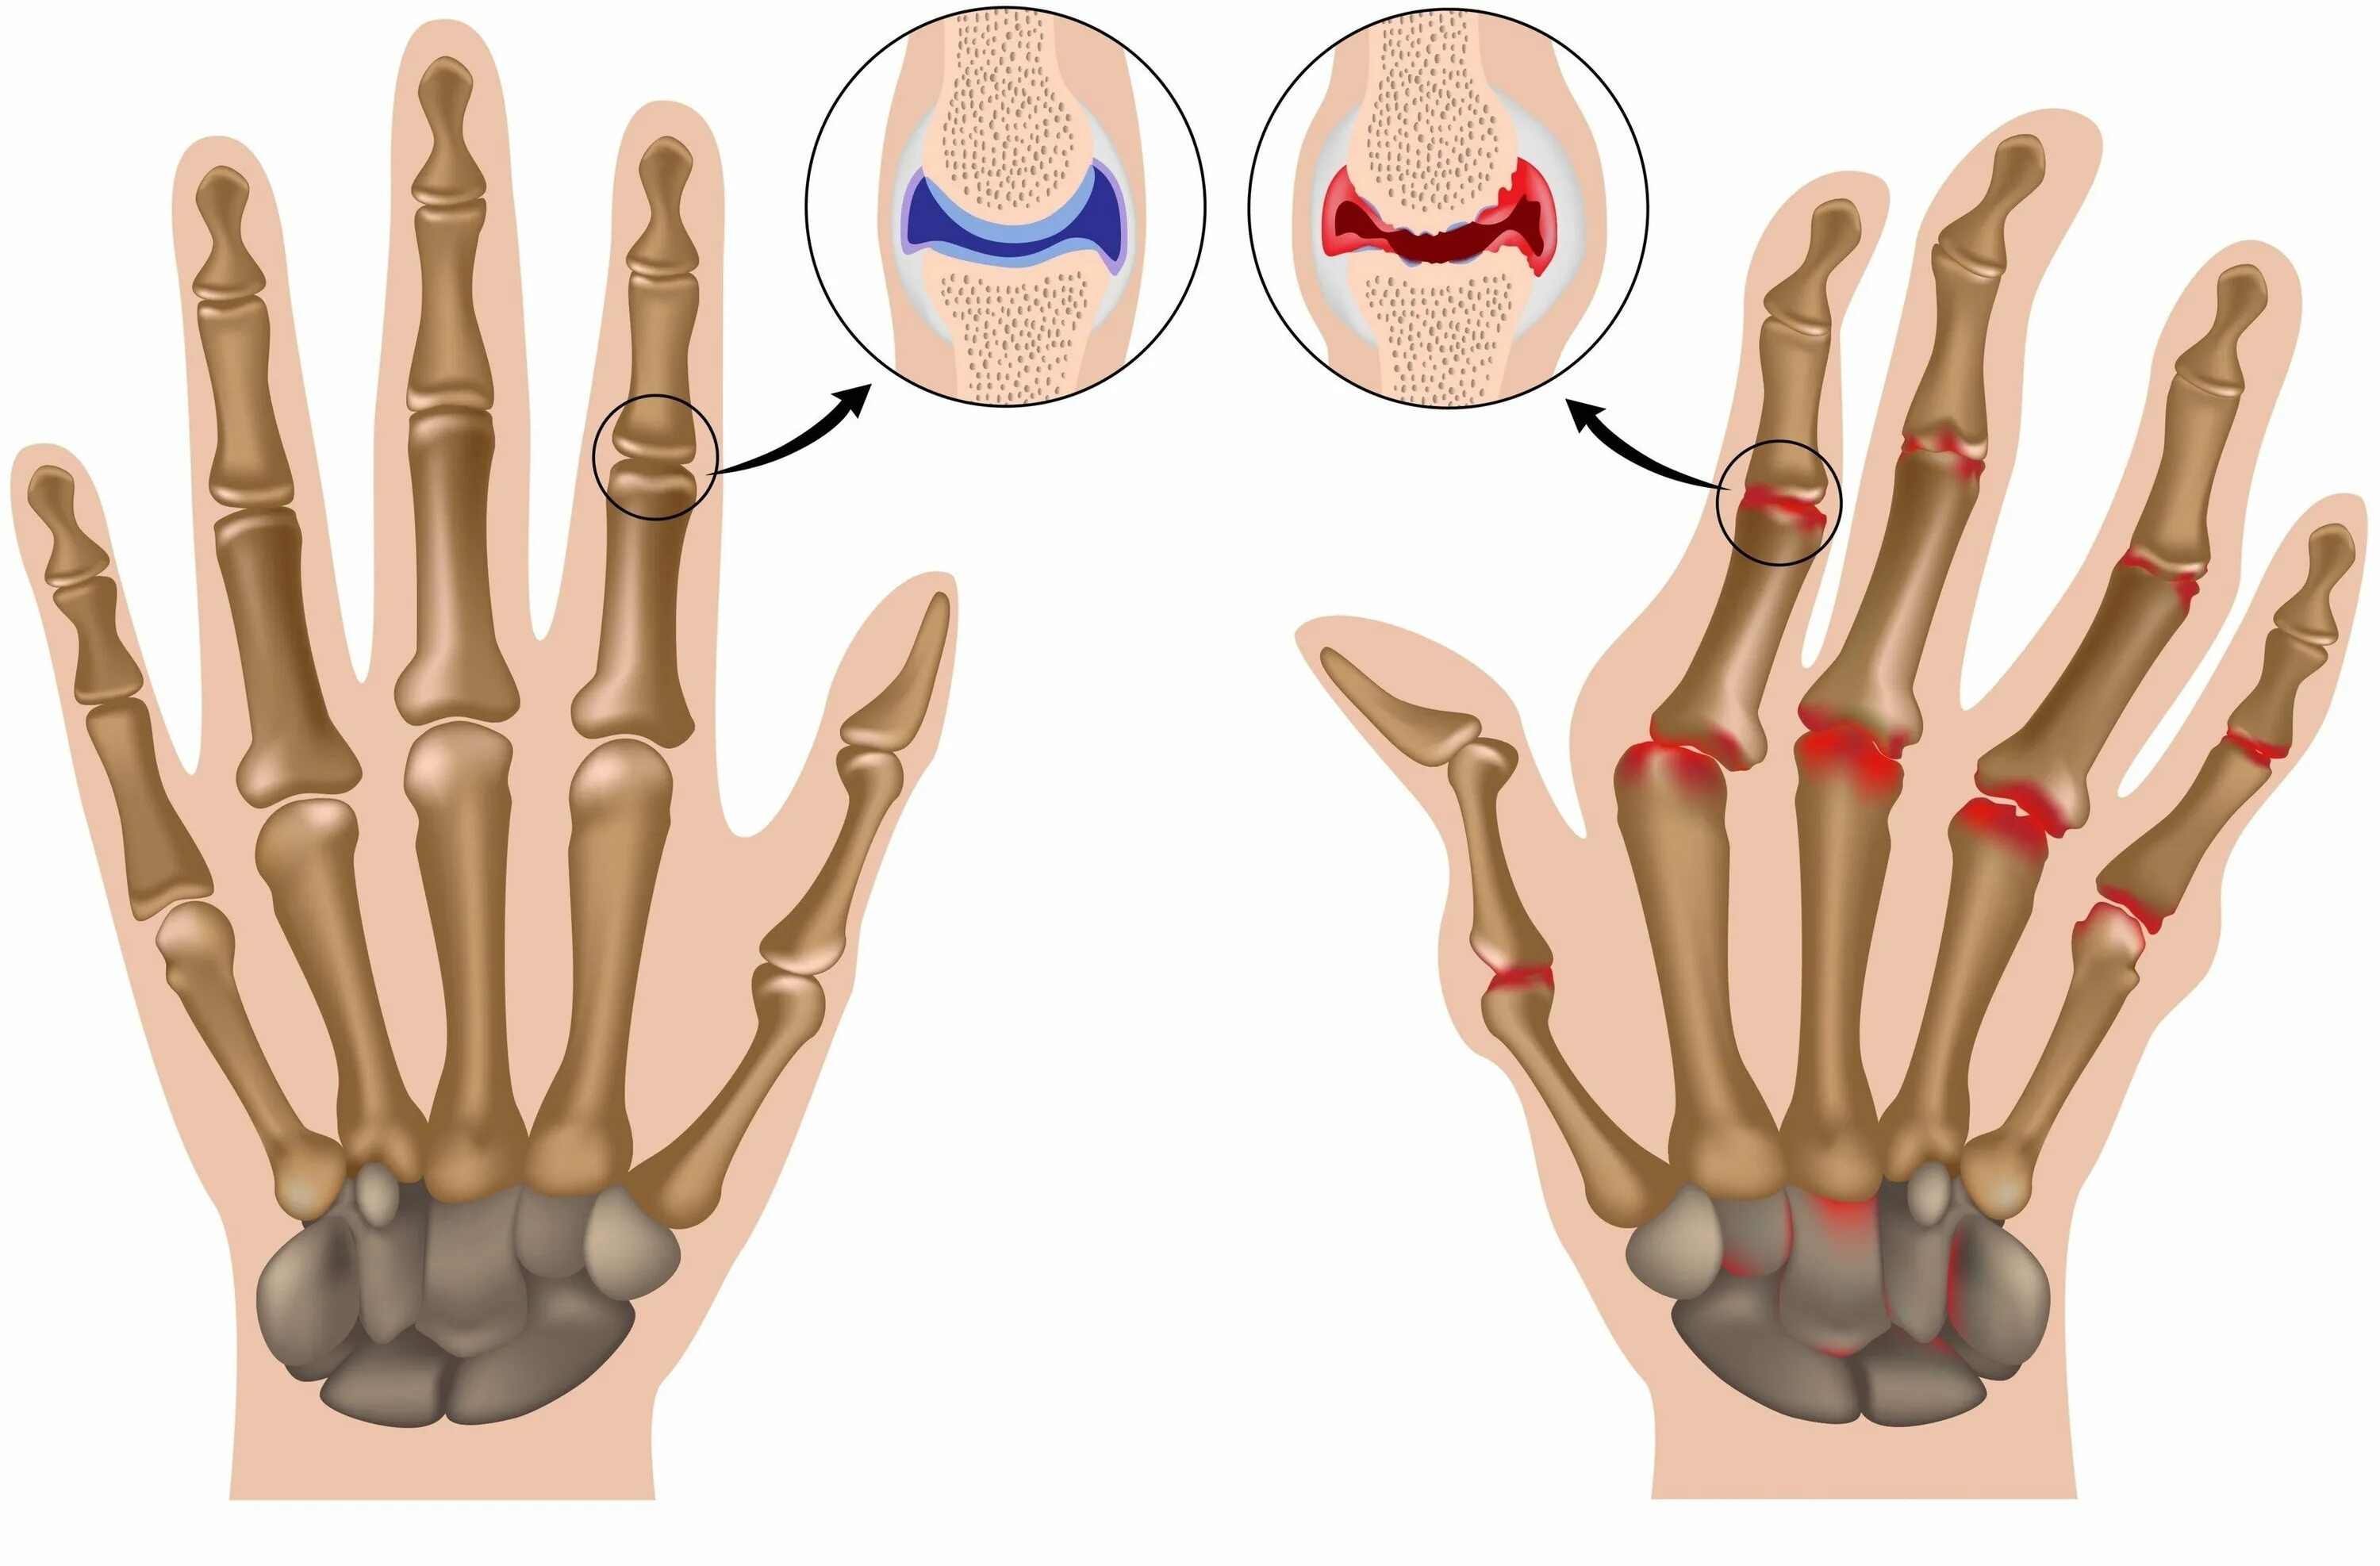 Ревматоидный артрит суставов кисти. Посттравматический артроз кисти. Посттравматический артроз пальцев кисти.